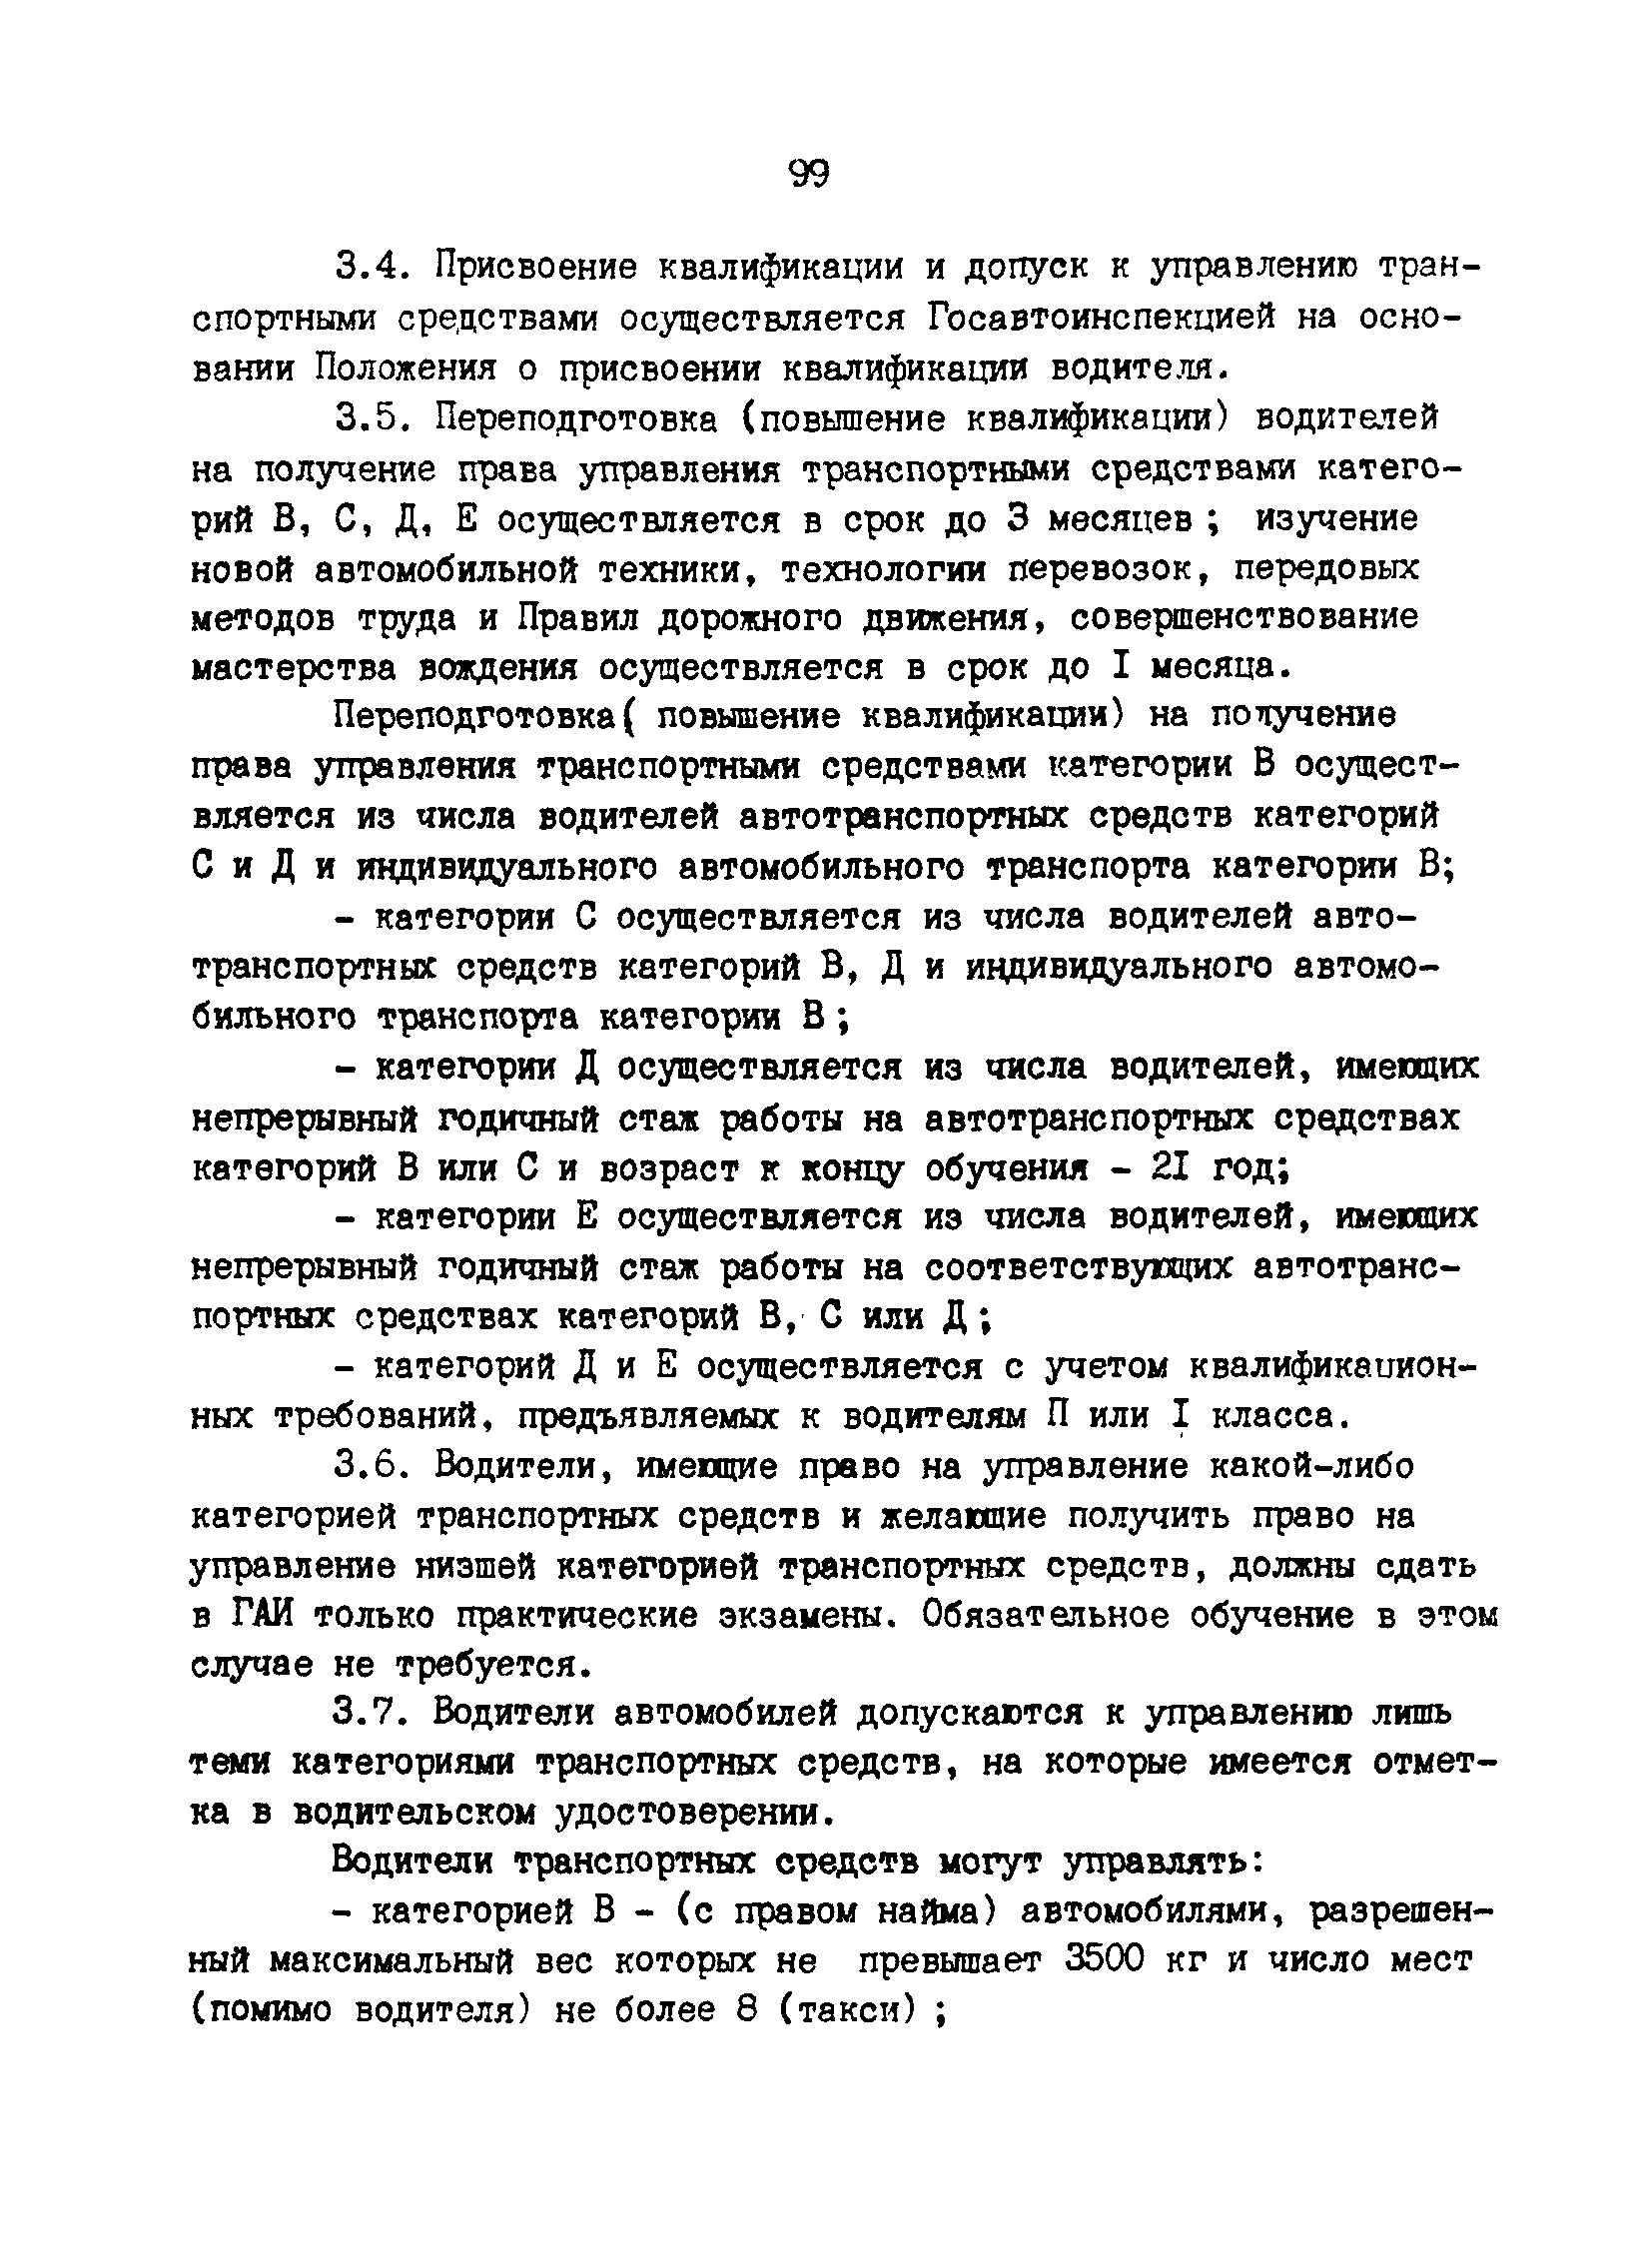 РД 200-РСФСР-12-0071-86-10